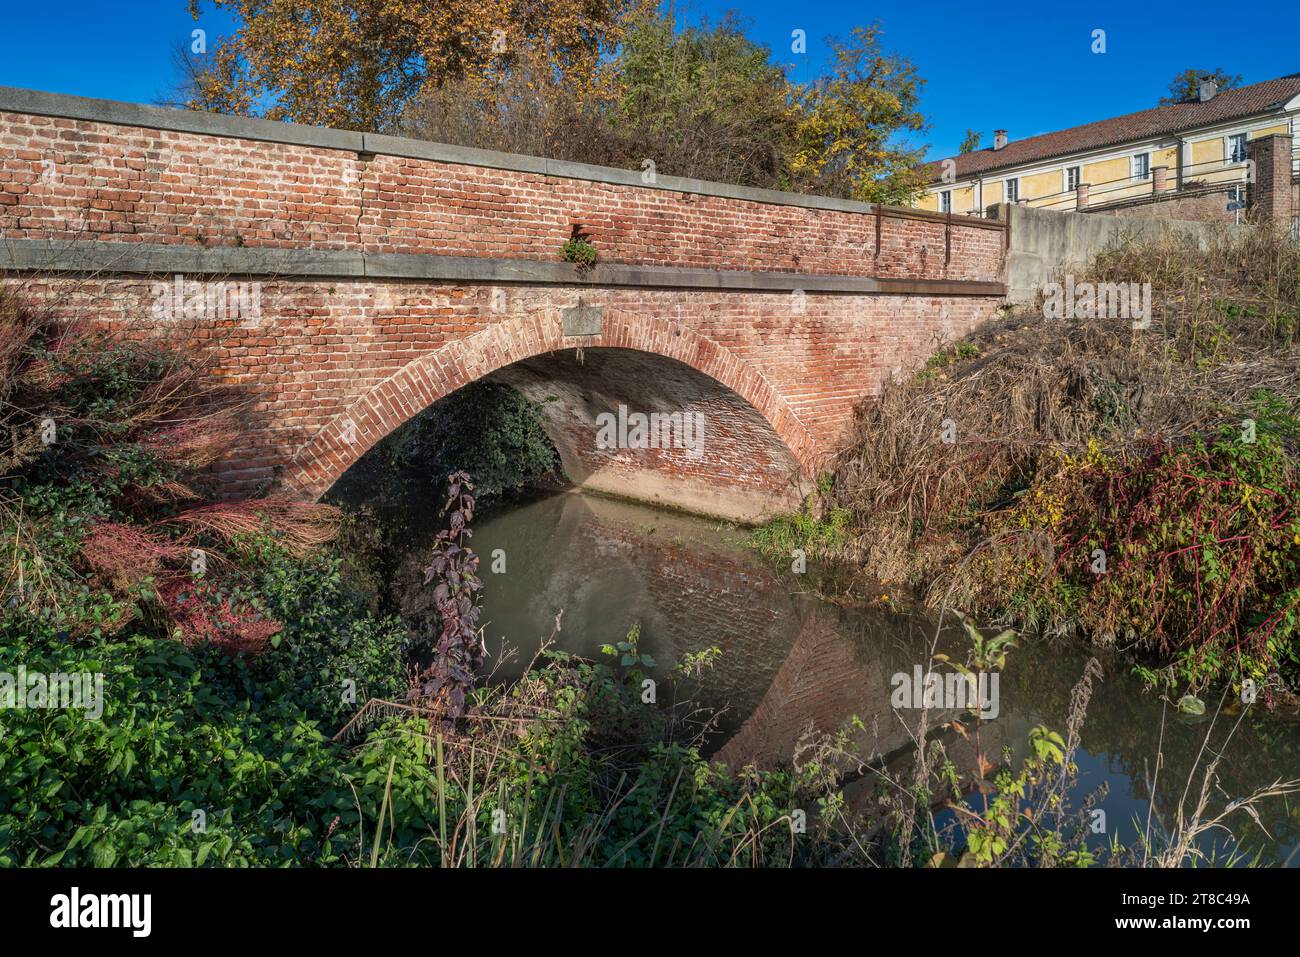 Ancien pont en brique voûté, construit en 1839, sur le canal dans la campagne de la vallée du Pô à Borgo Cornarese di Villastellone, Turin, Italie Banque D'Images